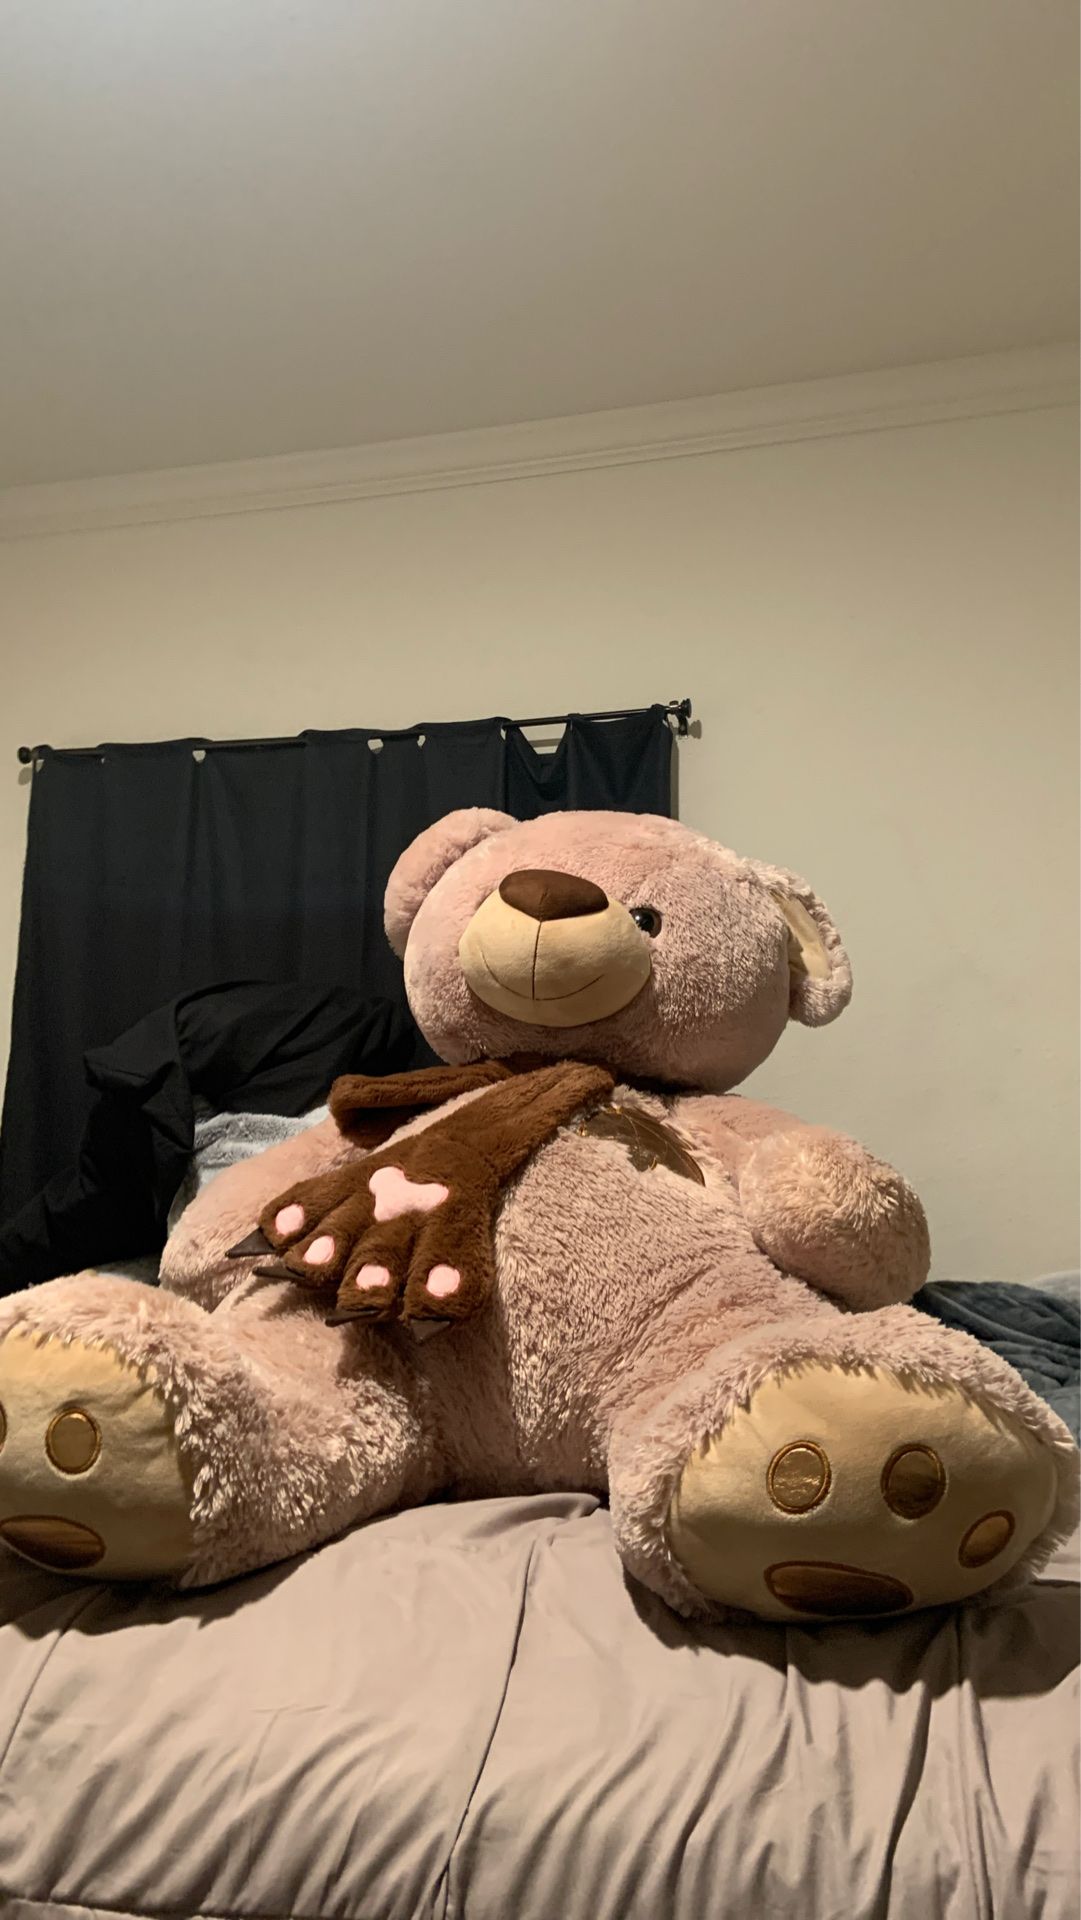 Big teddy bear 🧸 3 .5 feet tall ?